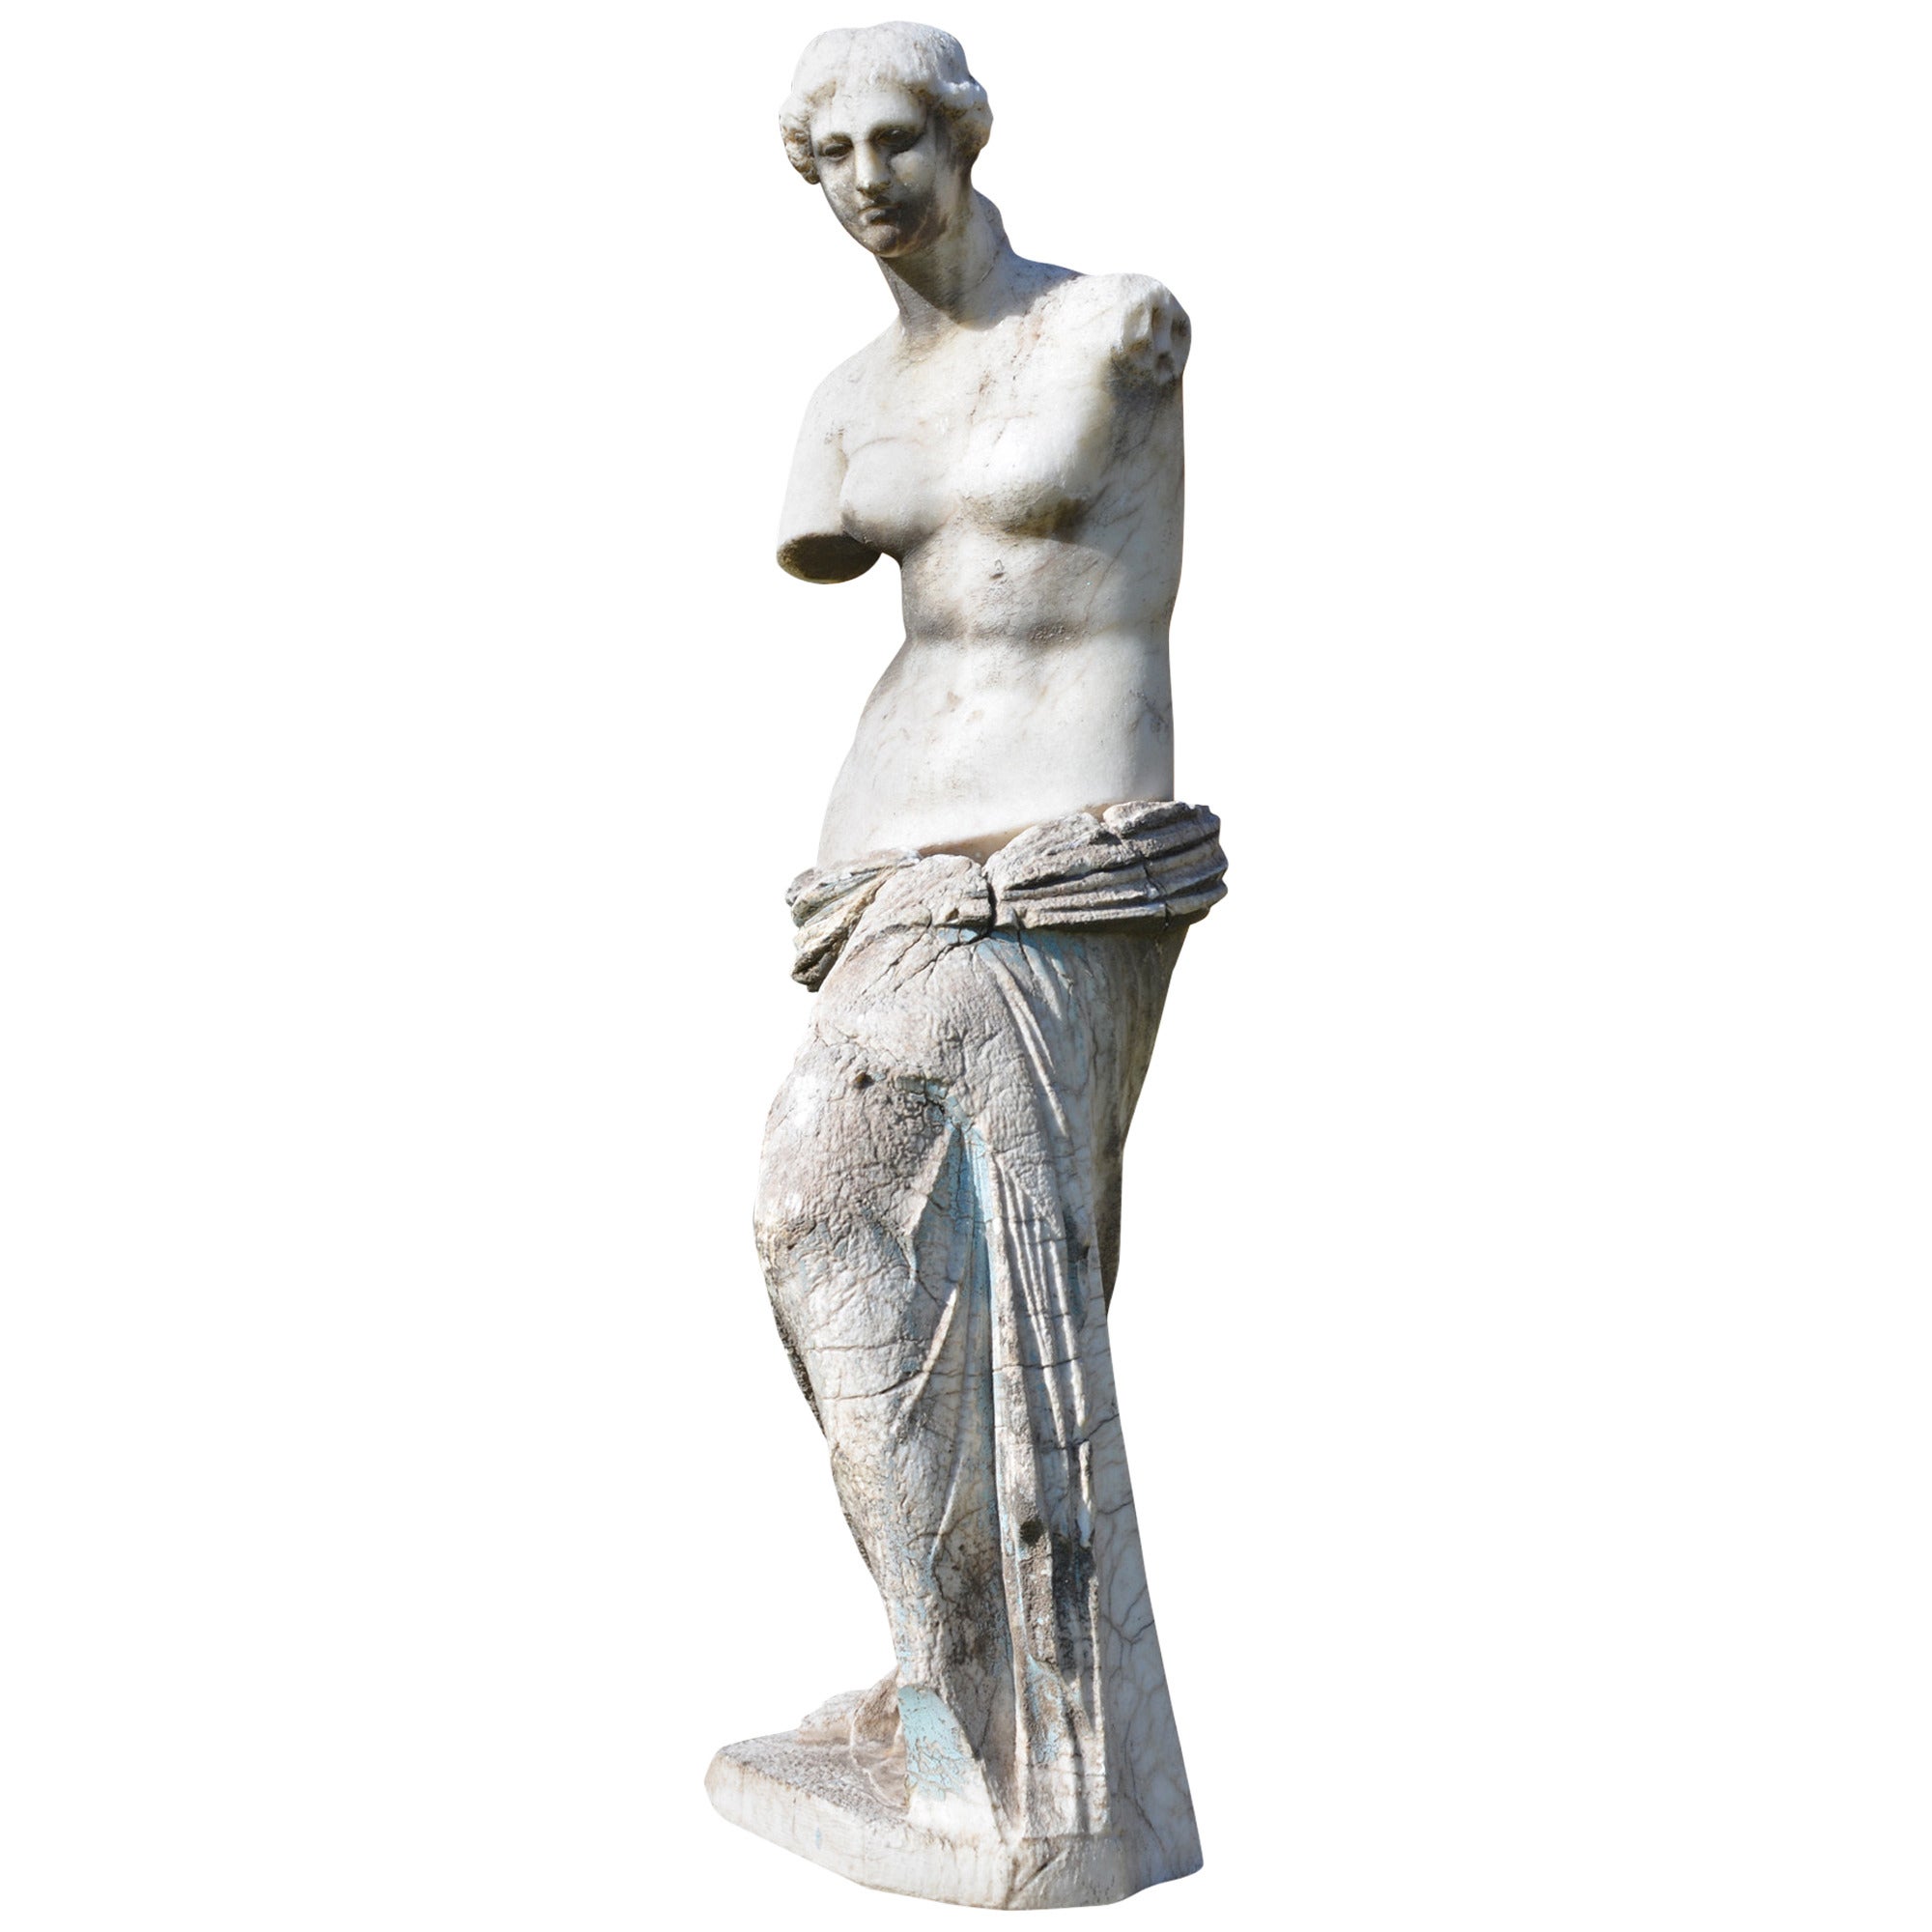 An alabaster Figure of the 'Venus de Milo' For Sale